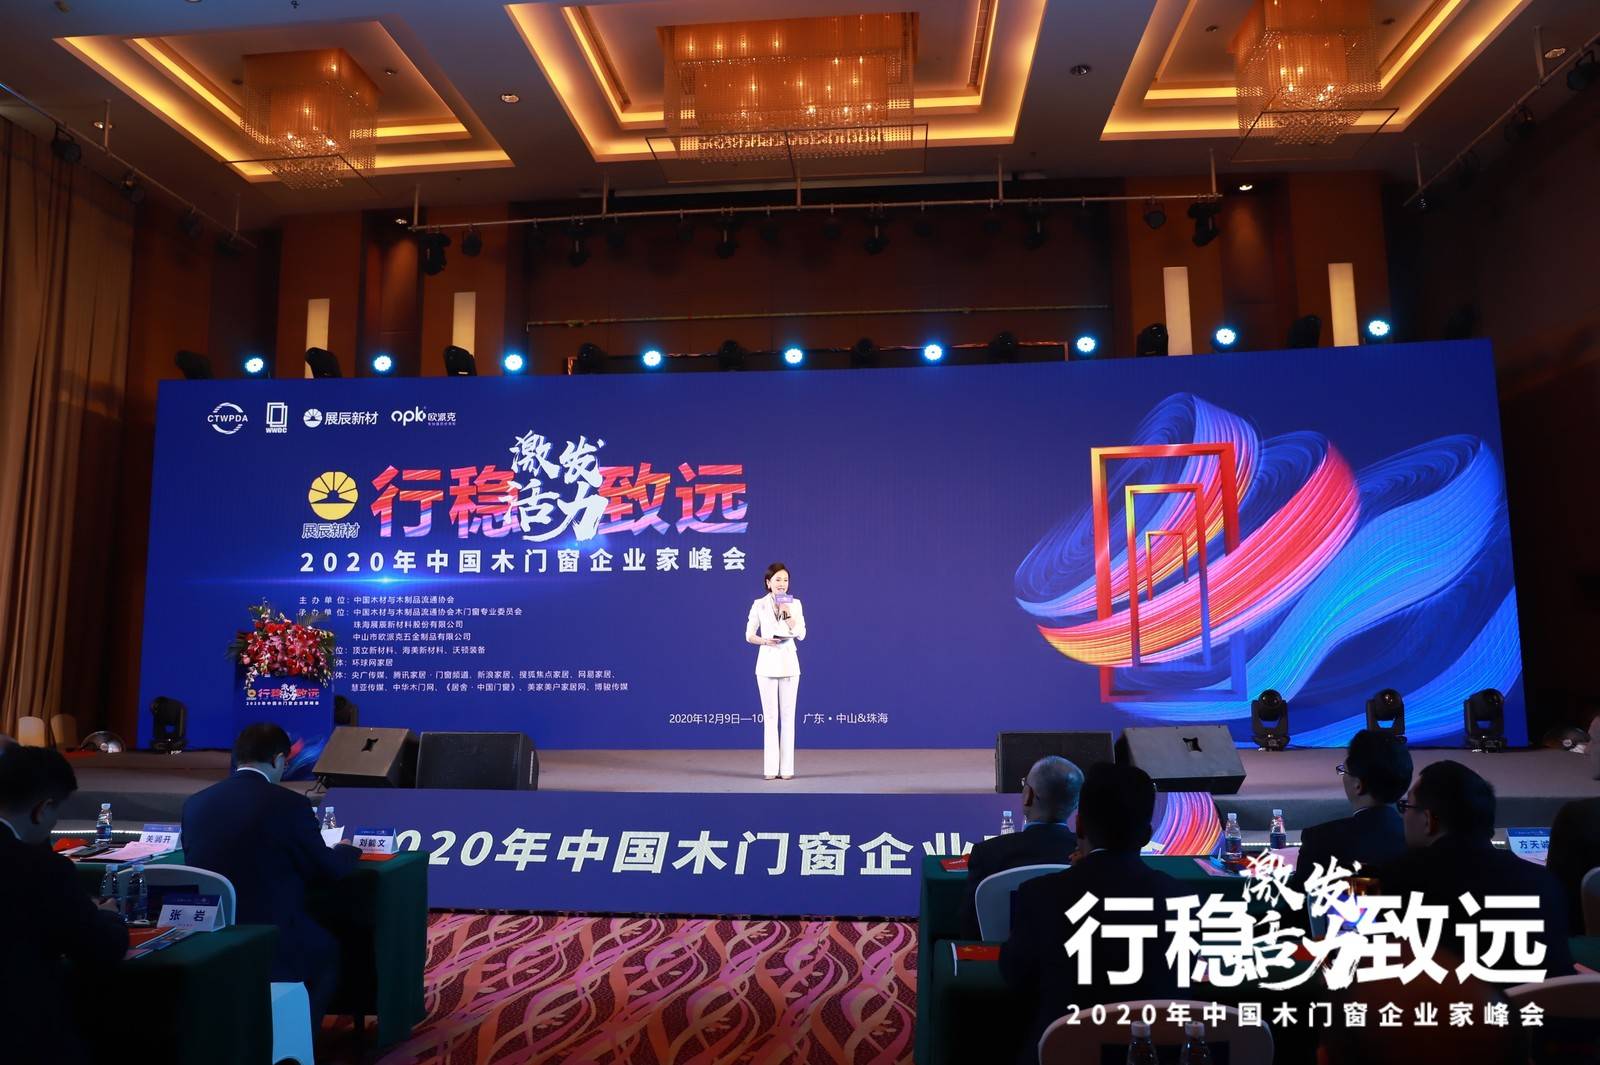 2020年中国木门窗企业家峰会在广东·中山&珠海成功召开。